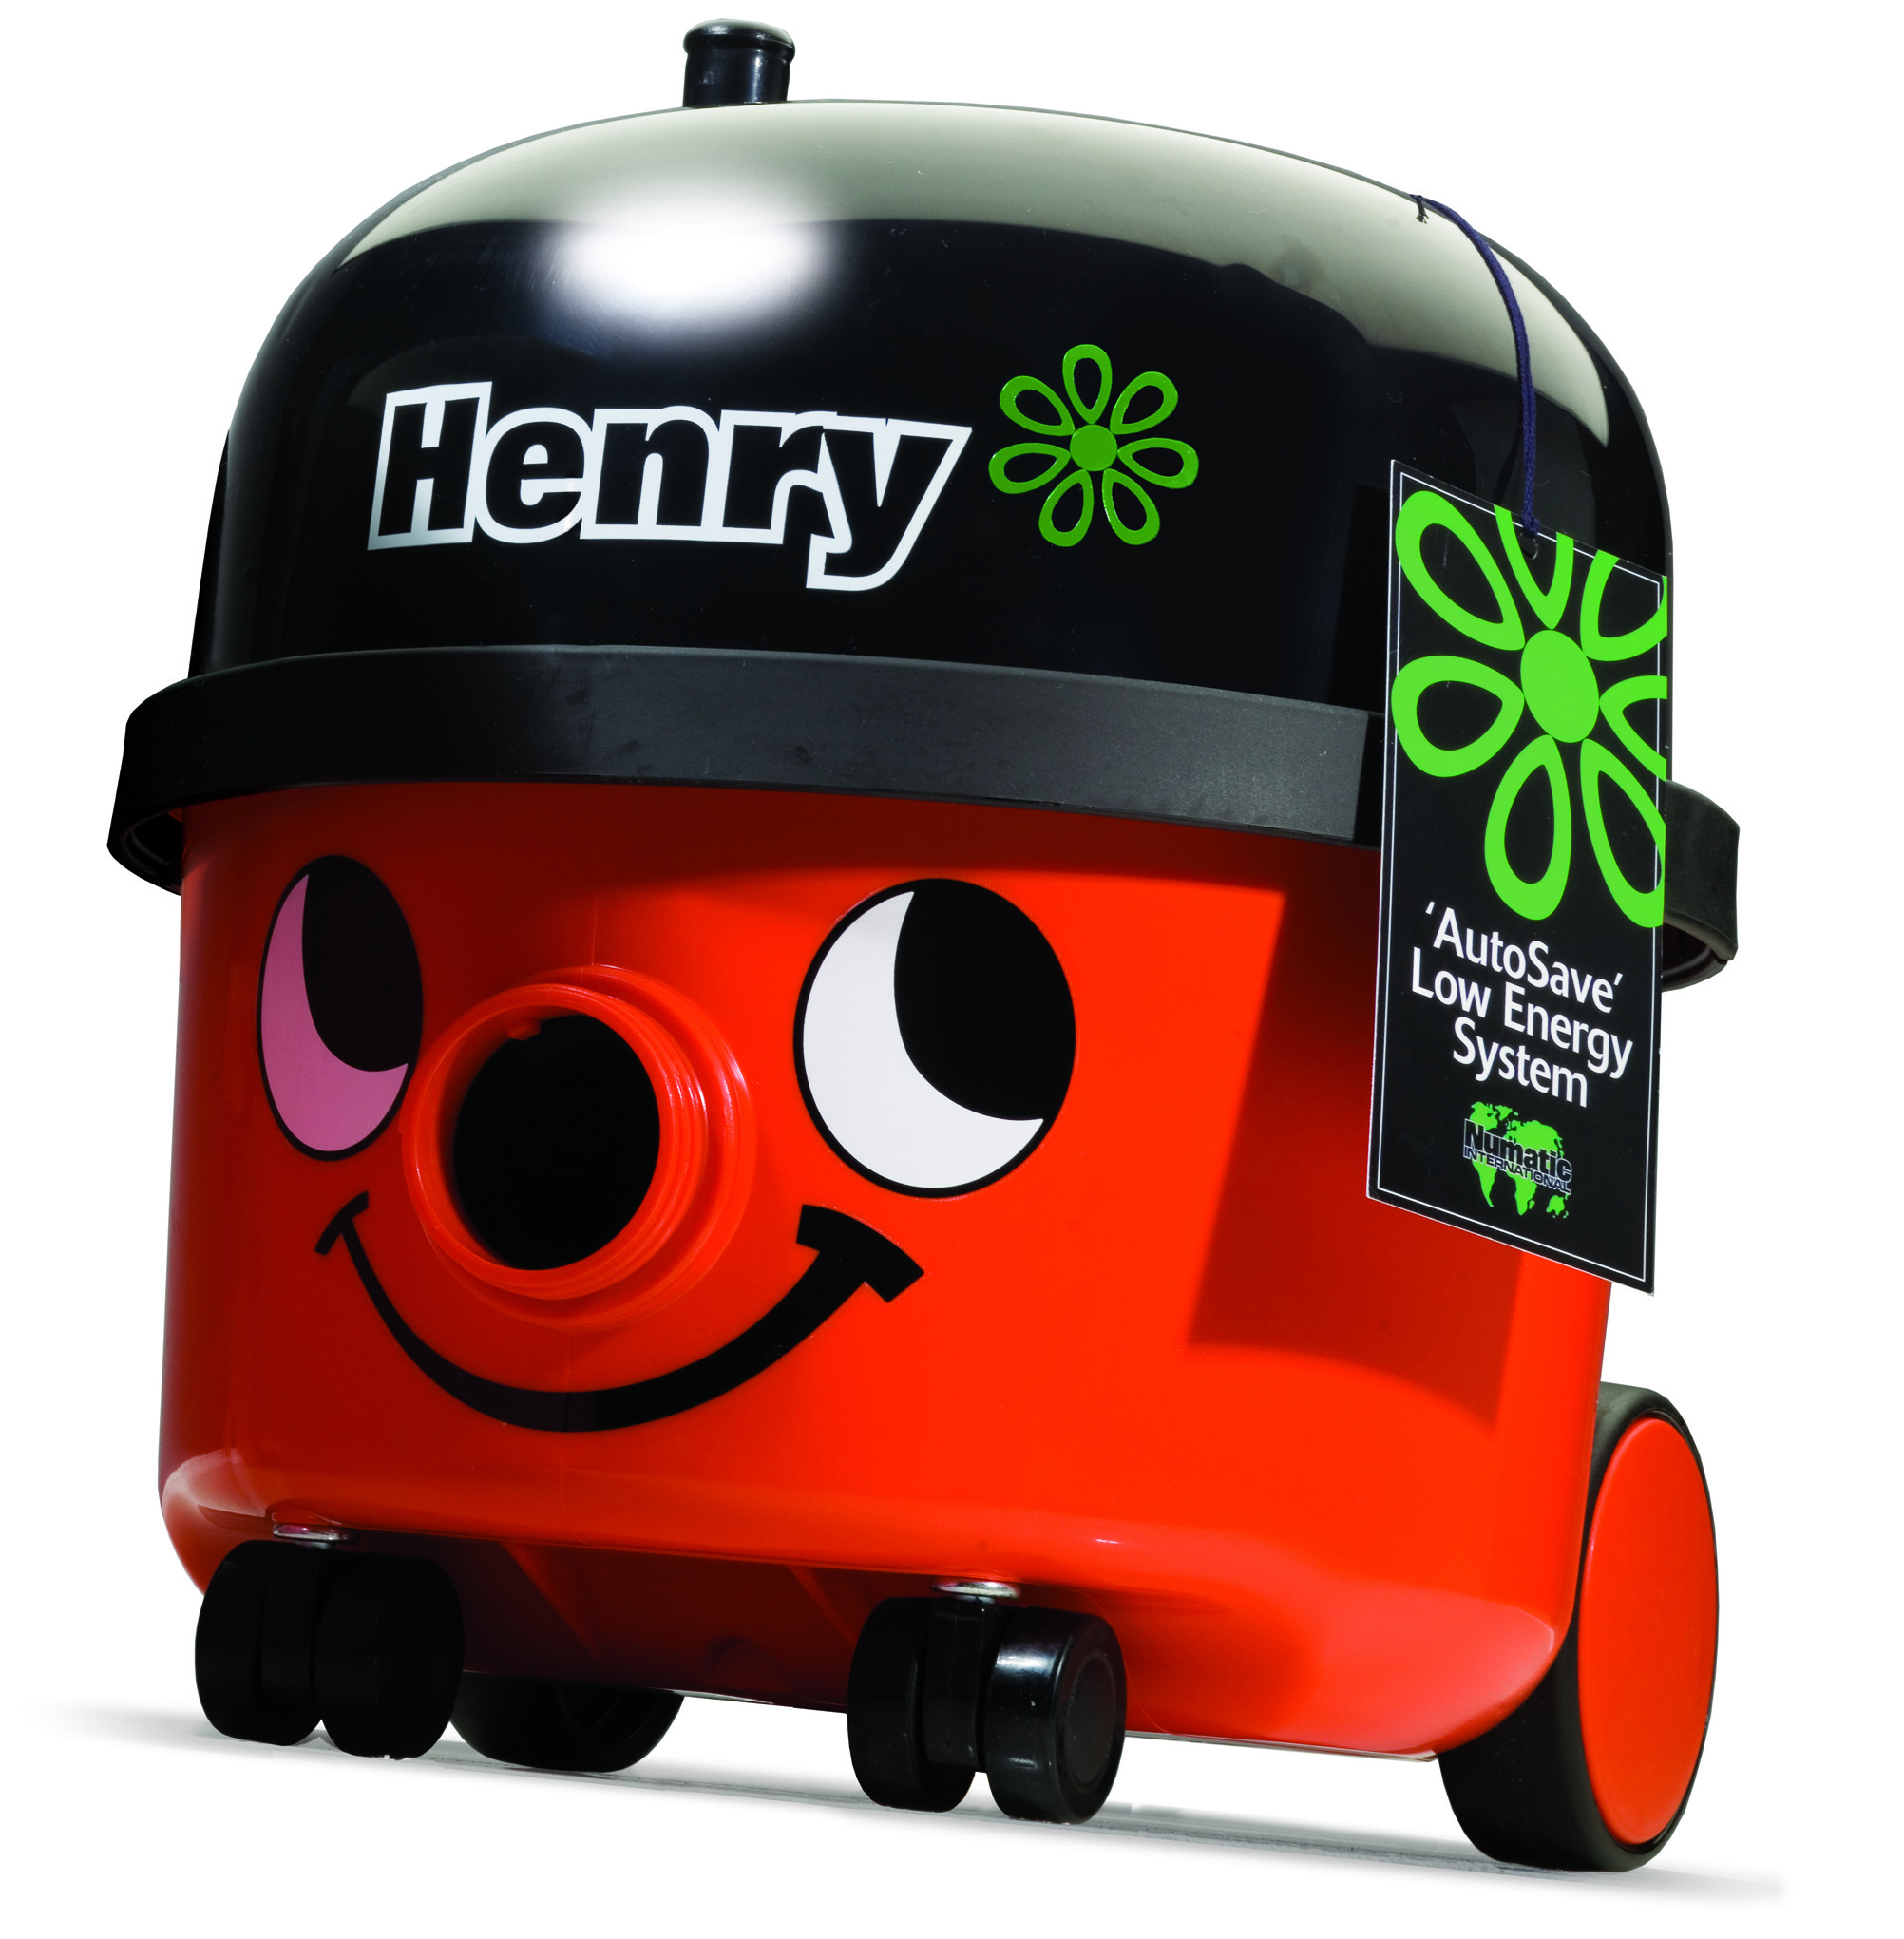 Henry NVH 200